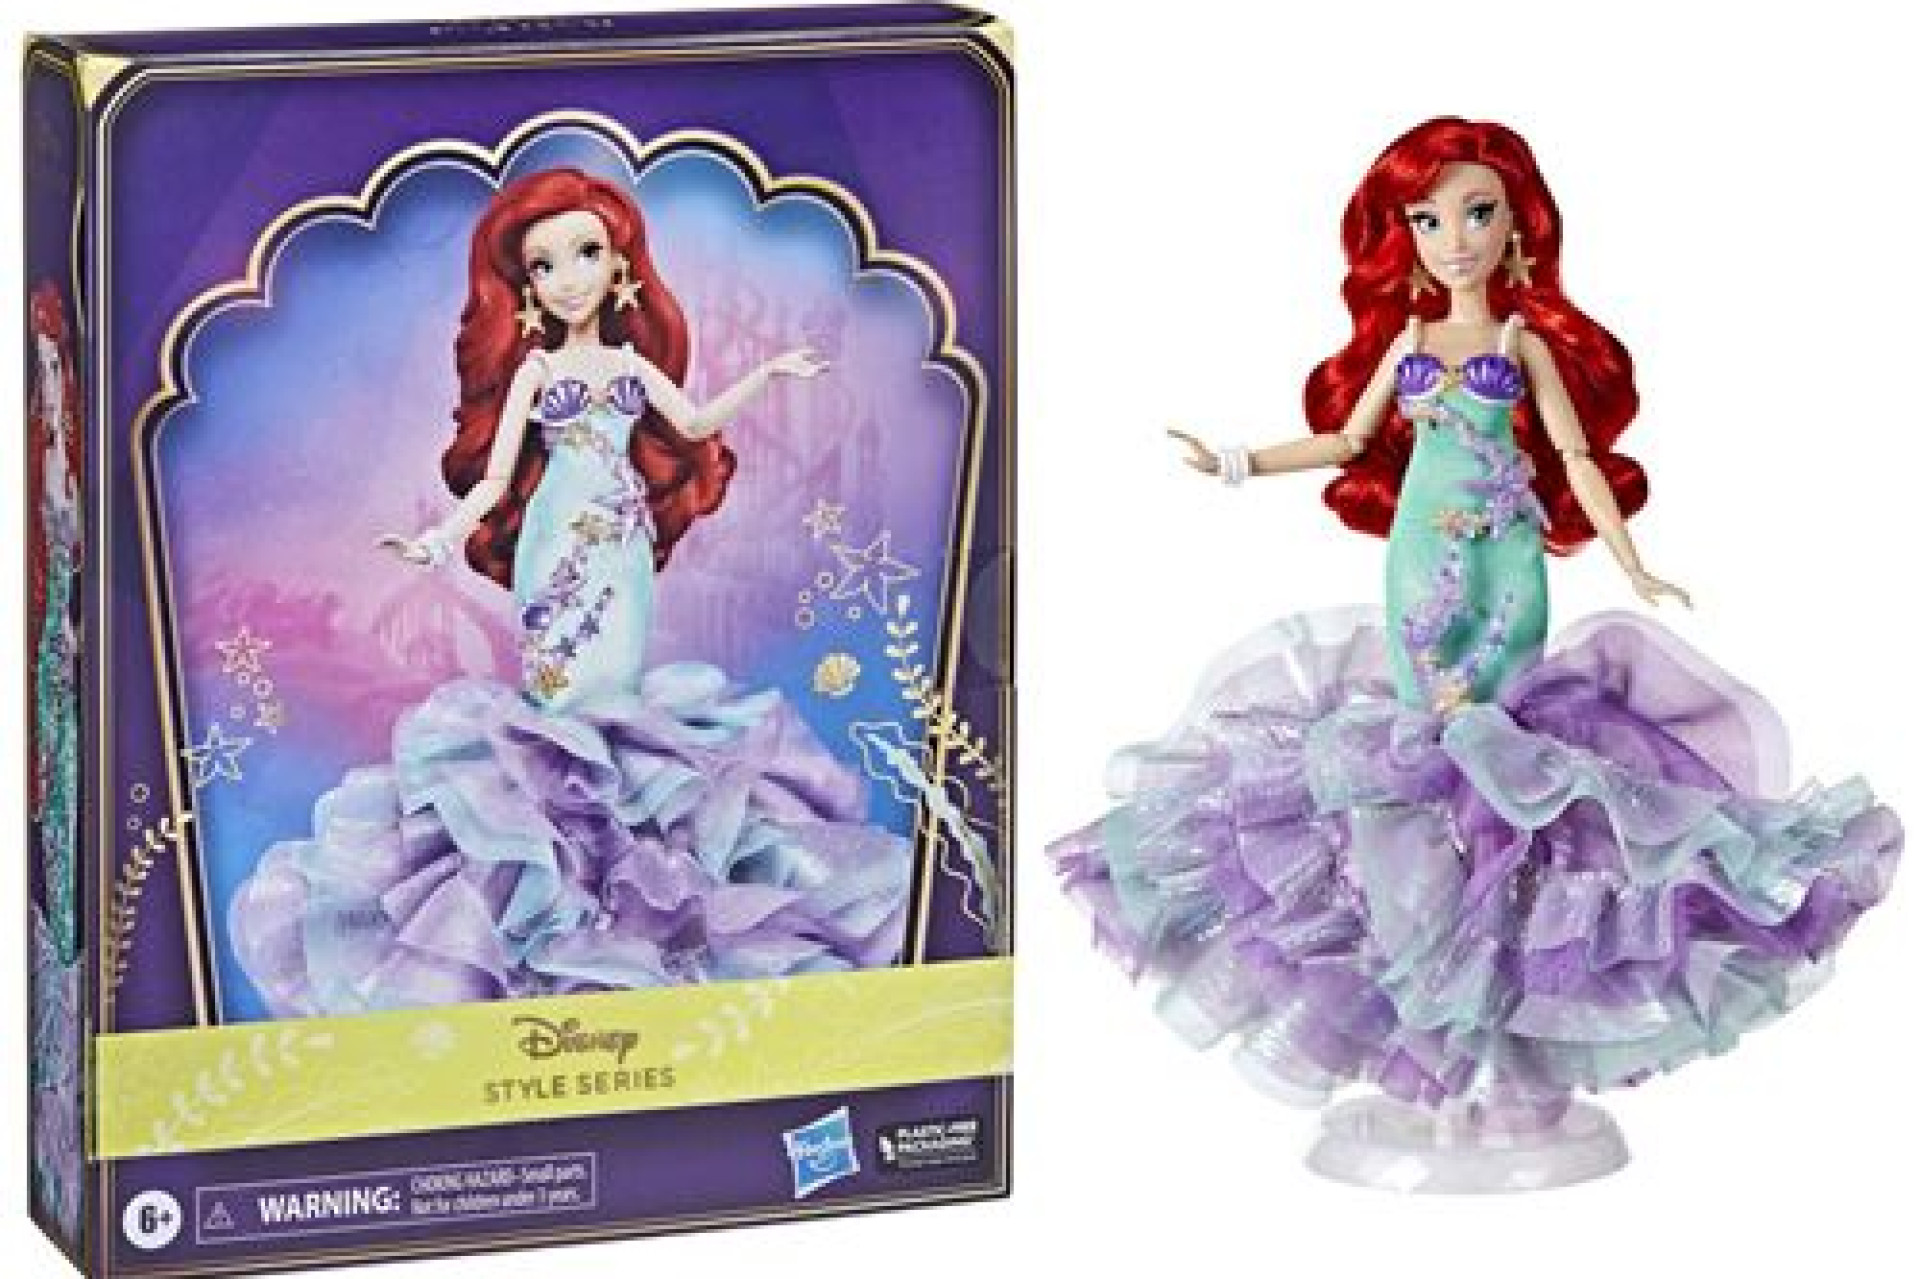 Acheter Poupée Disney Princesses Style Series Ariel